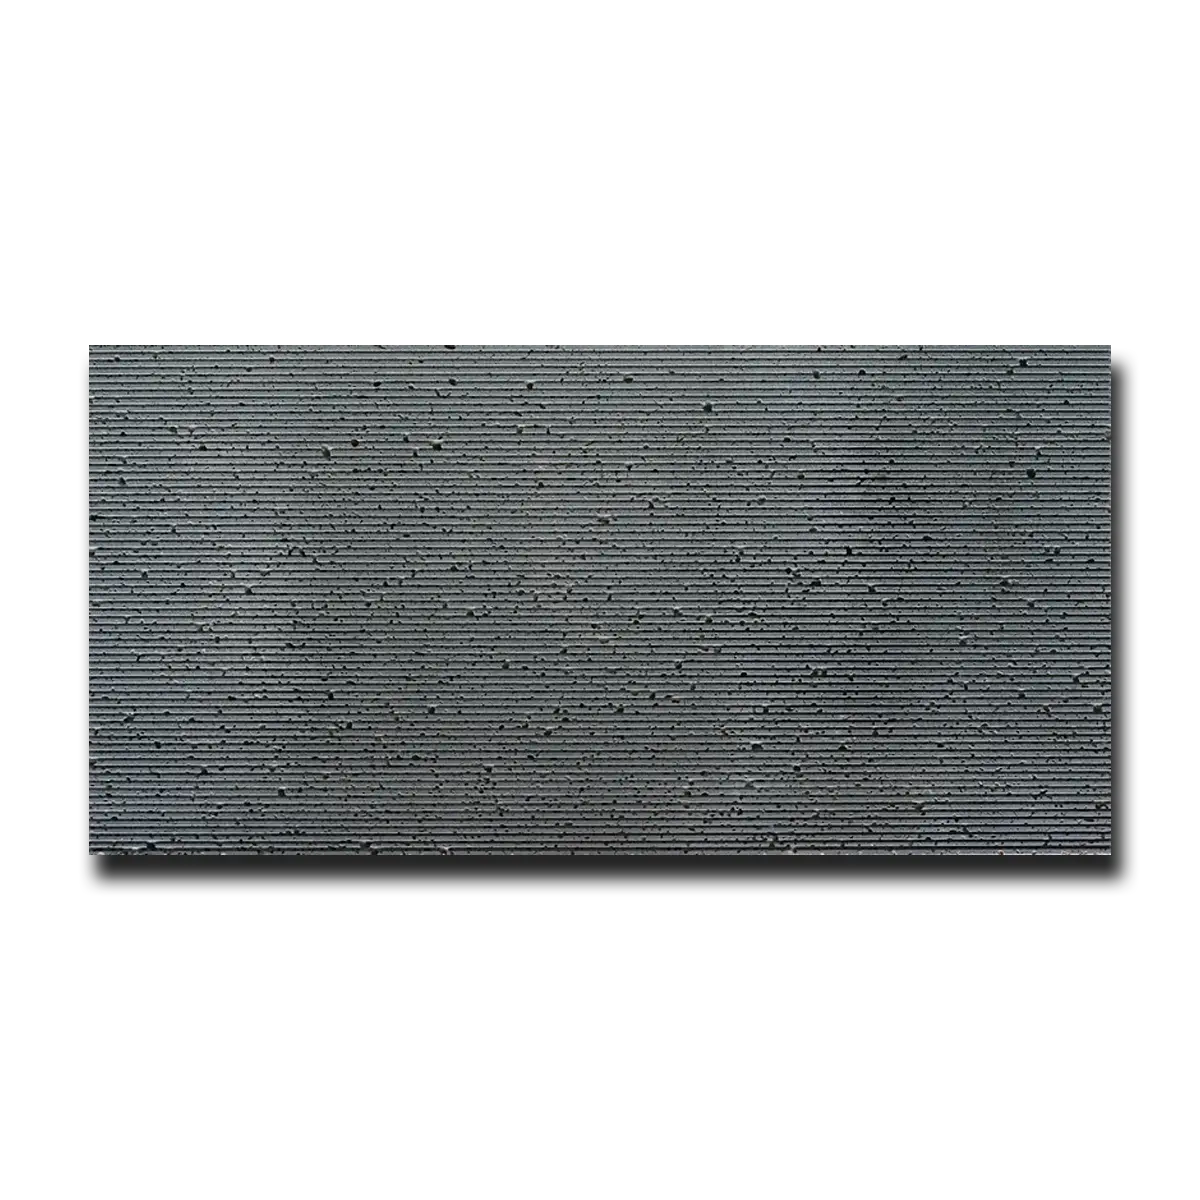 Gray Lava Lava Tile Honed & Wired 6" x 12" 1/2" Tile